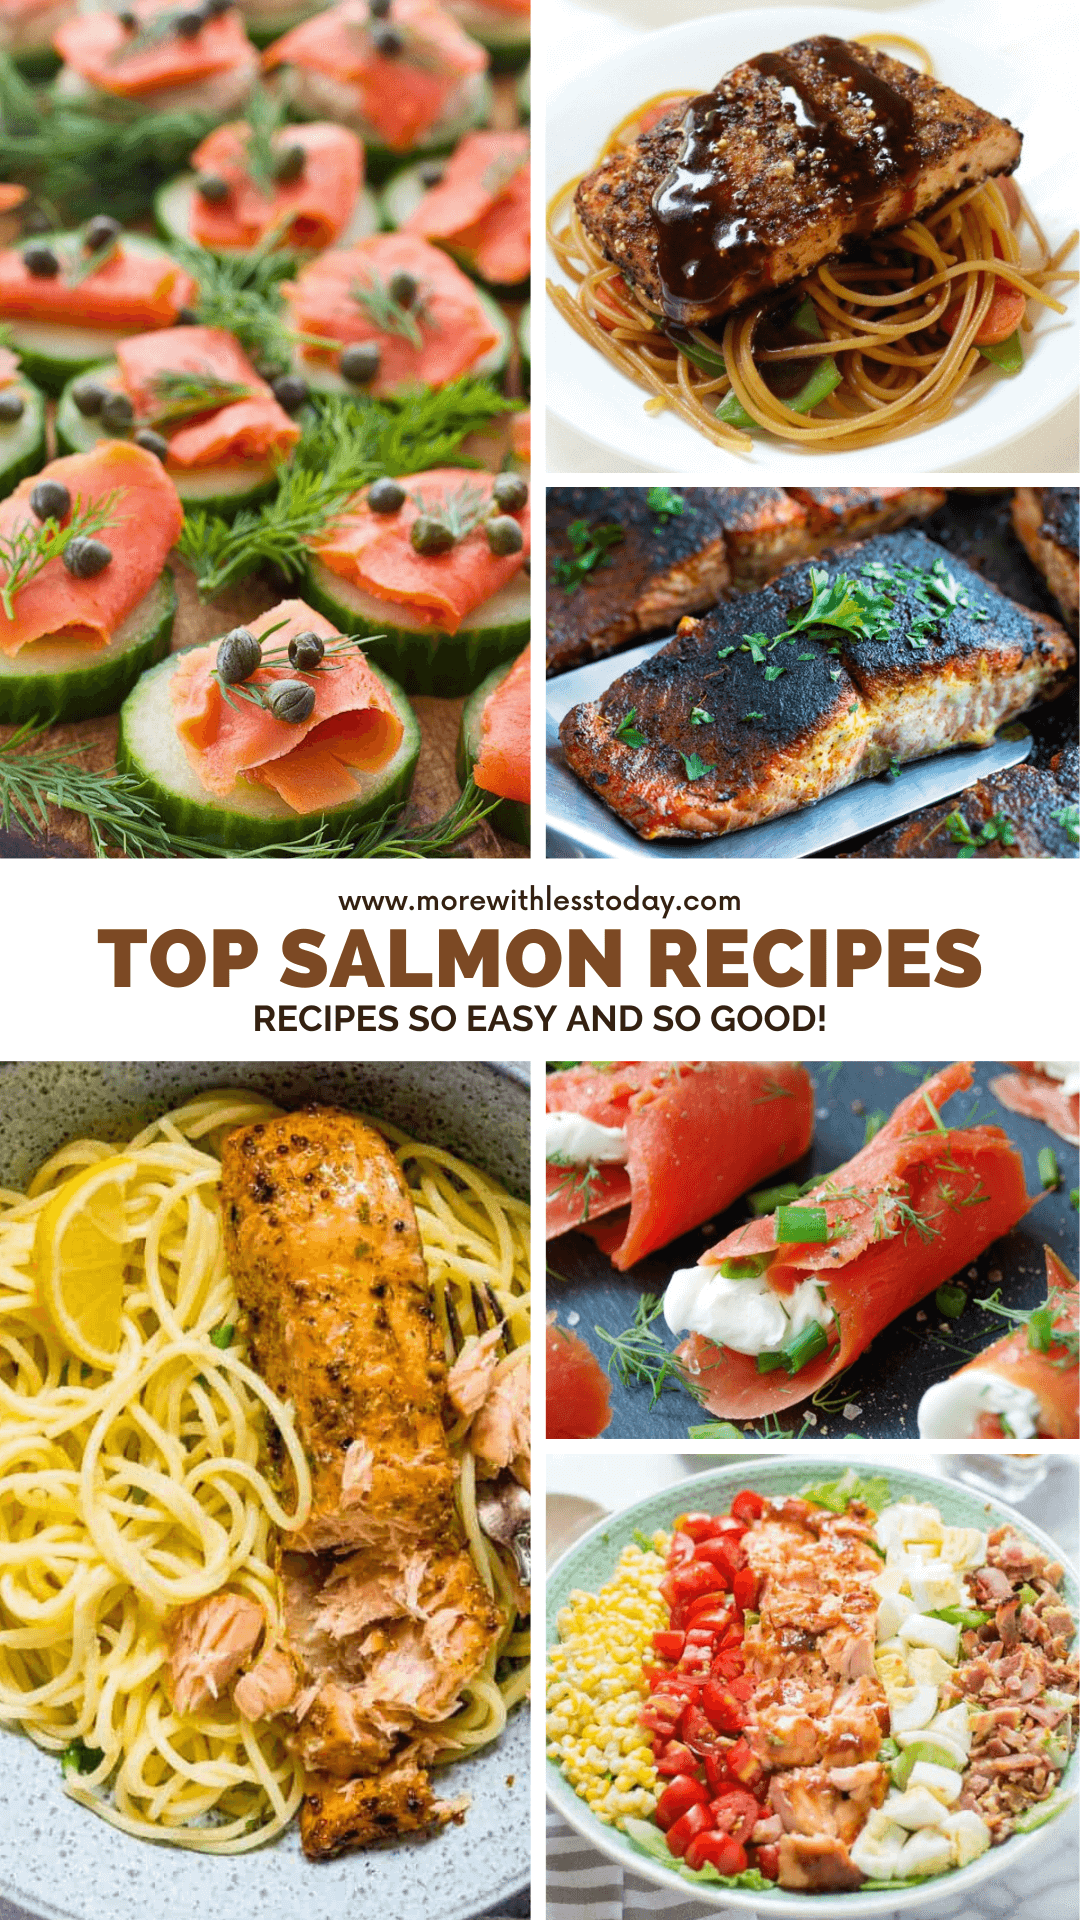 Top Salmon Recipes - PIN